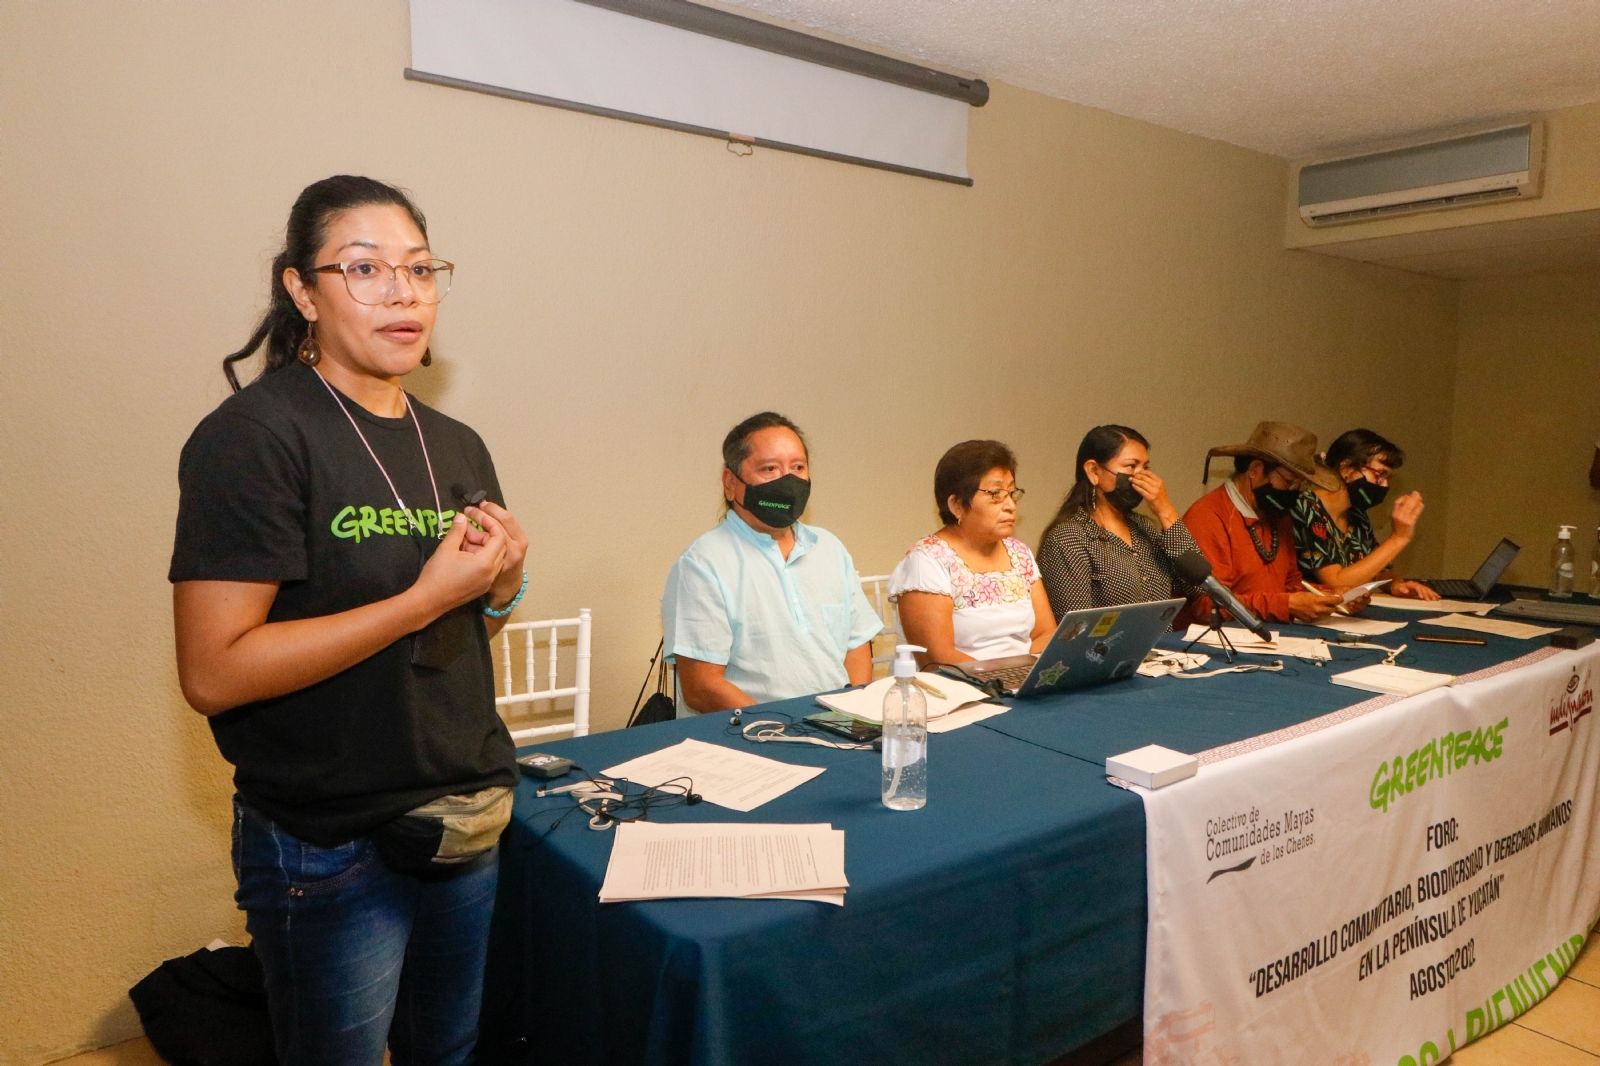 Los colectivos duraron más de 12 horas en la reunión con la presencia de Greenpeace; señalaron que urge regular a las empresas que destruyen los bienes comunes